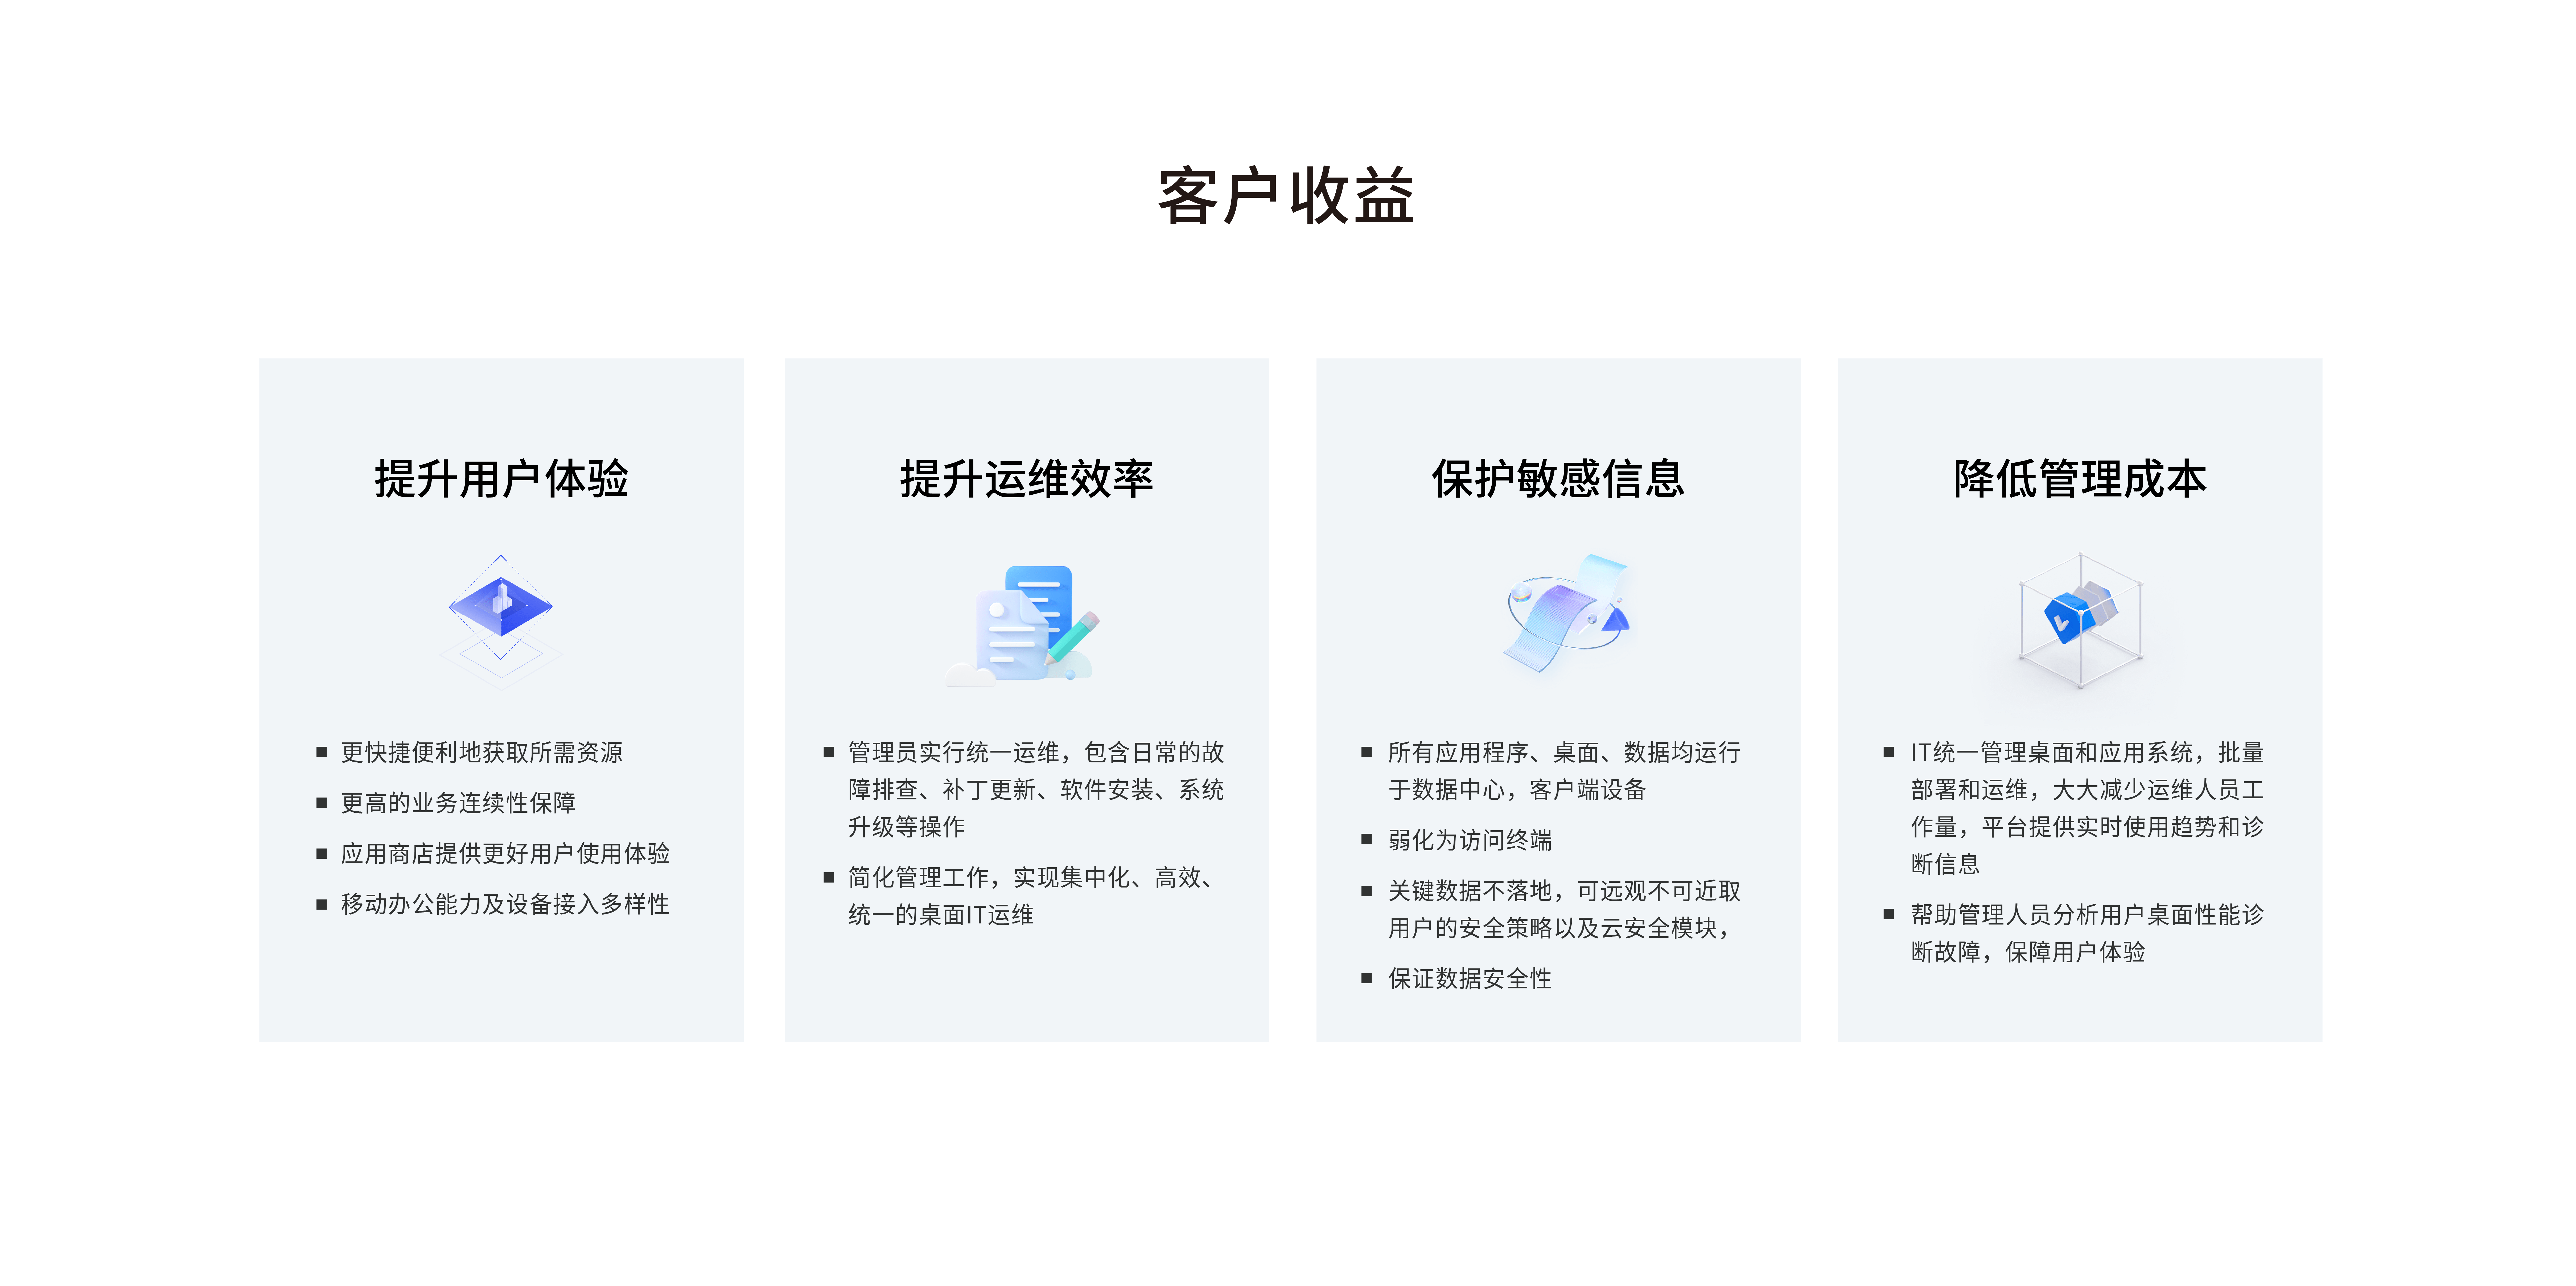 遥岚云桌面系统(图5)